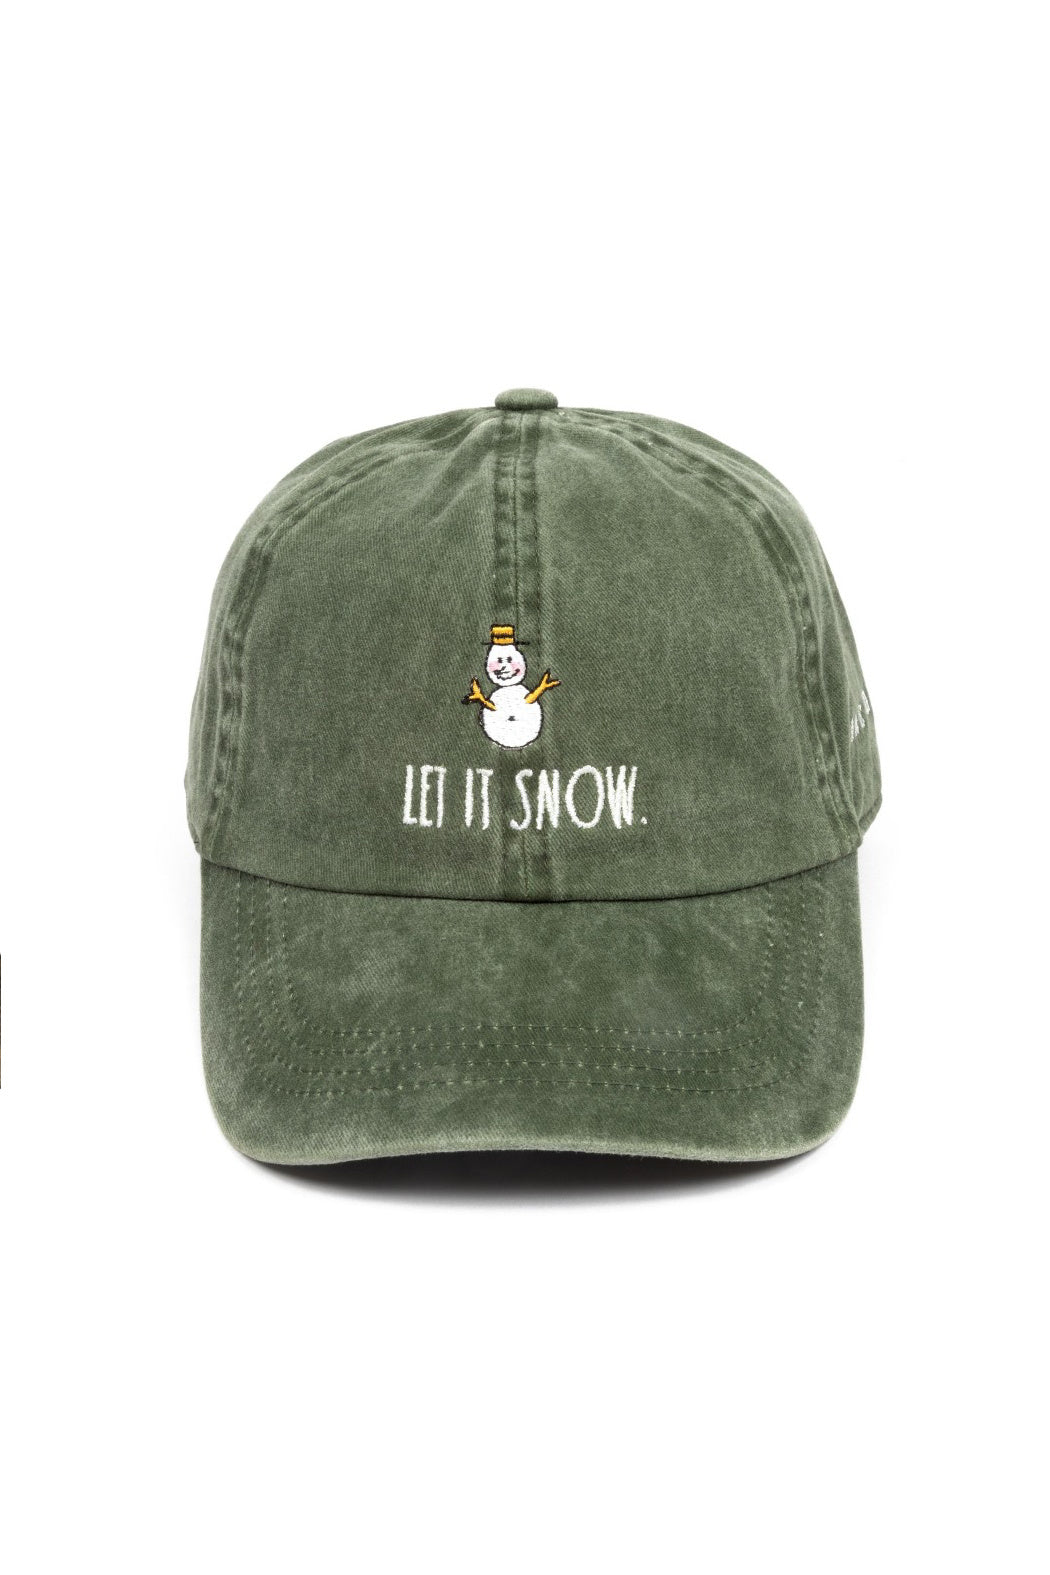 Let It Snow Cap